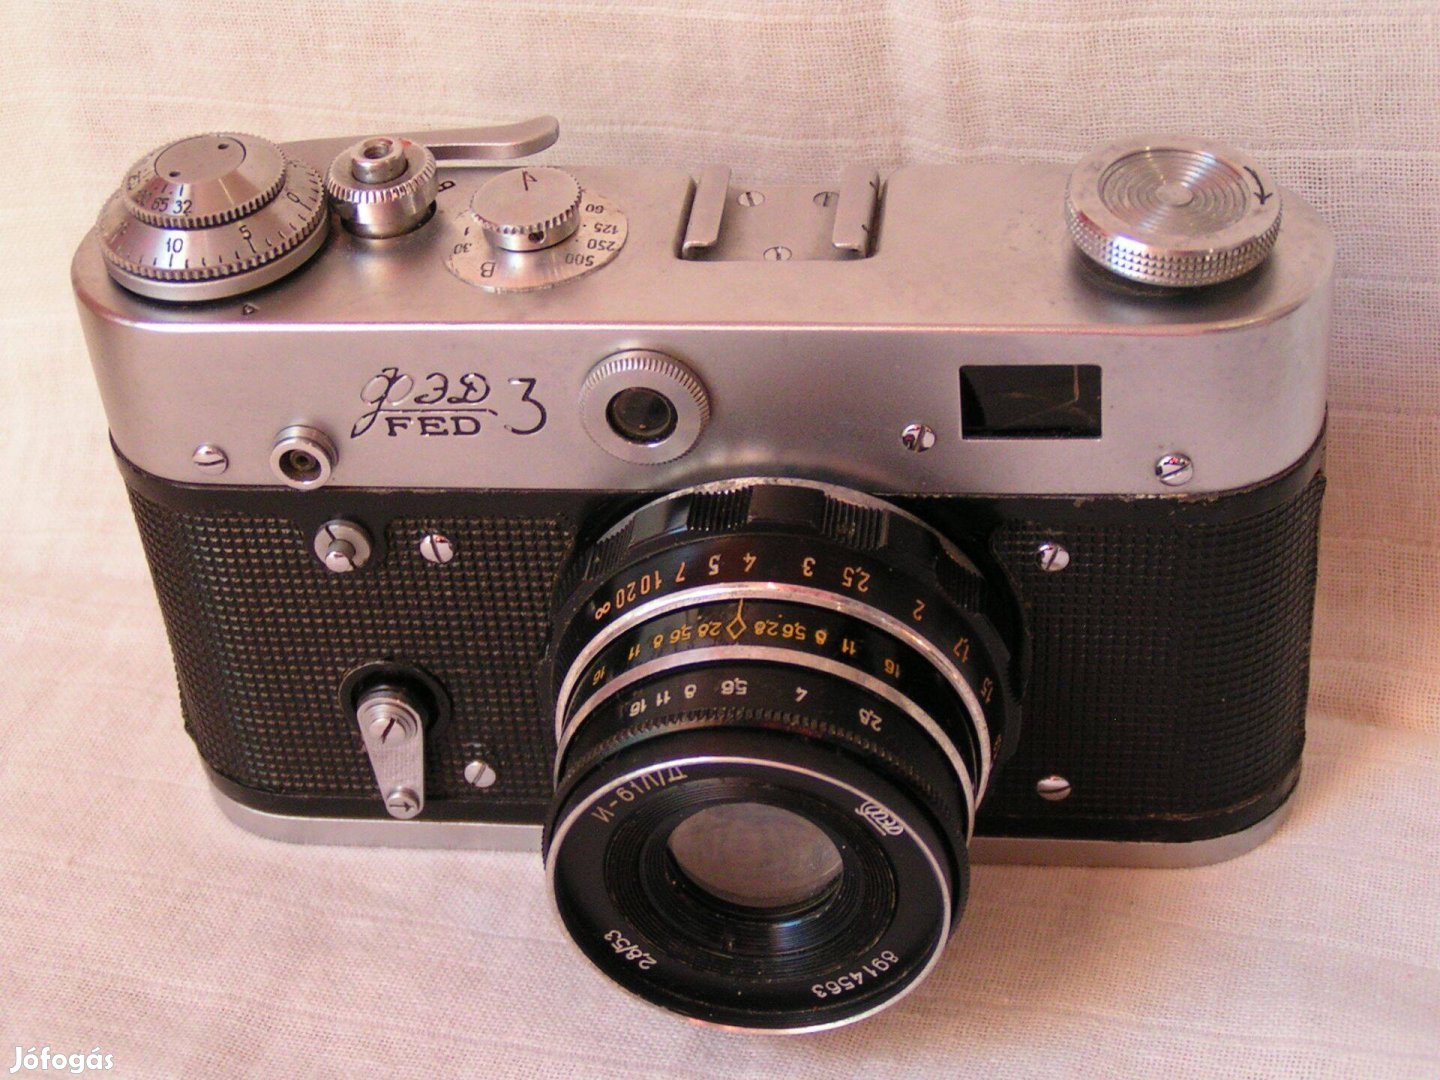 Fed 3 Filmes fényképezőgép